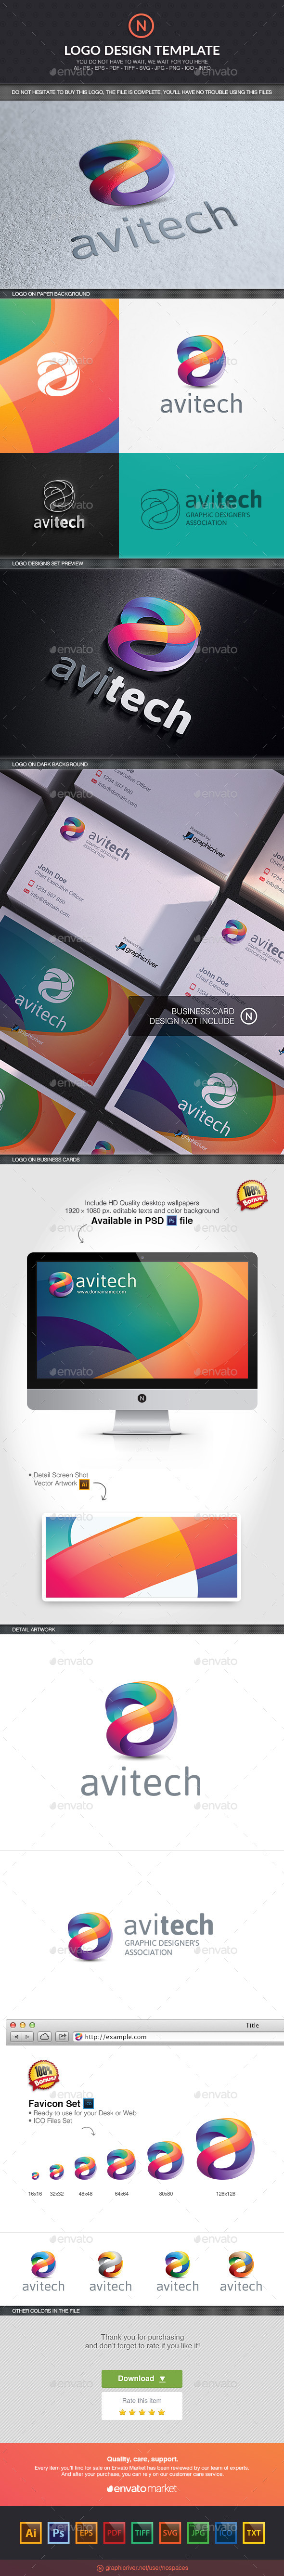 Avi Tech Software